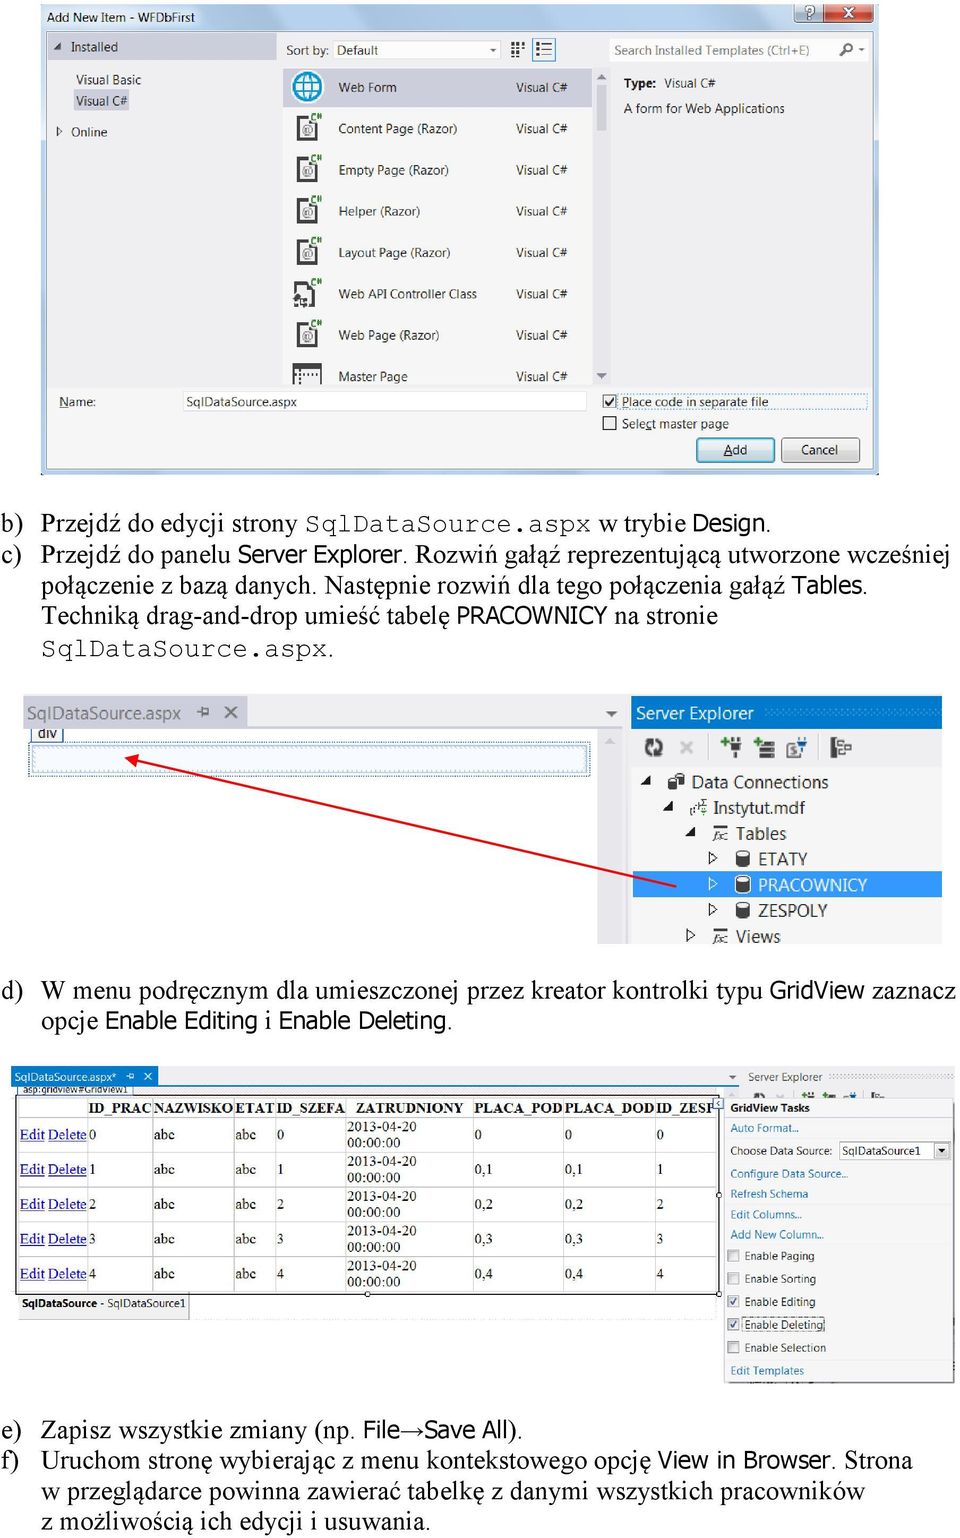 Techniką drag-and-drop umieść tabelę PRACOWNICY na stronie SqlDataSource.aspx.